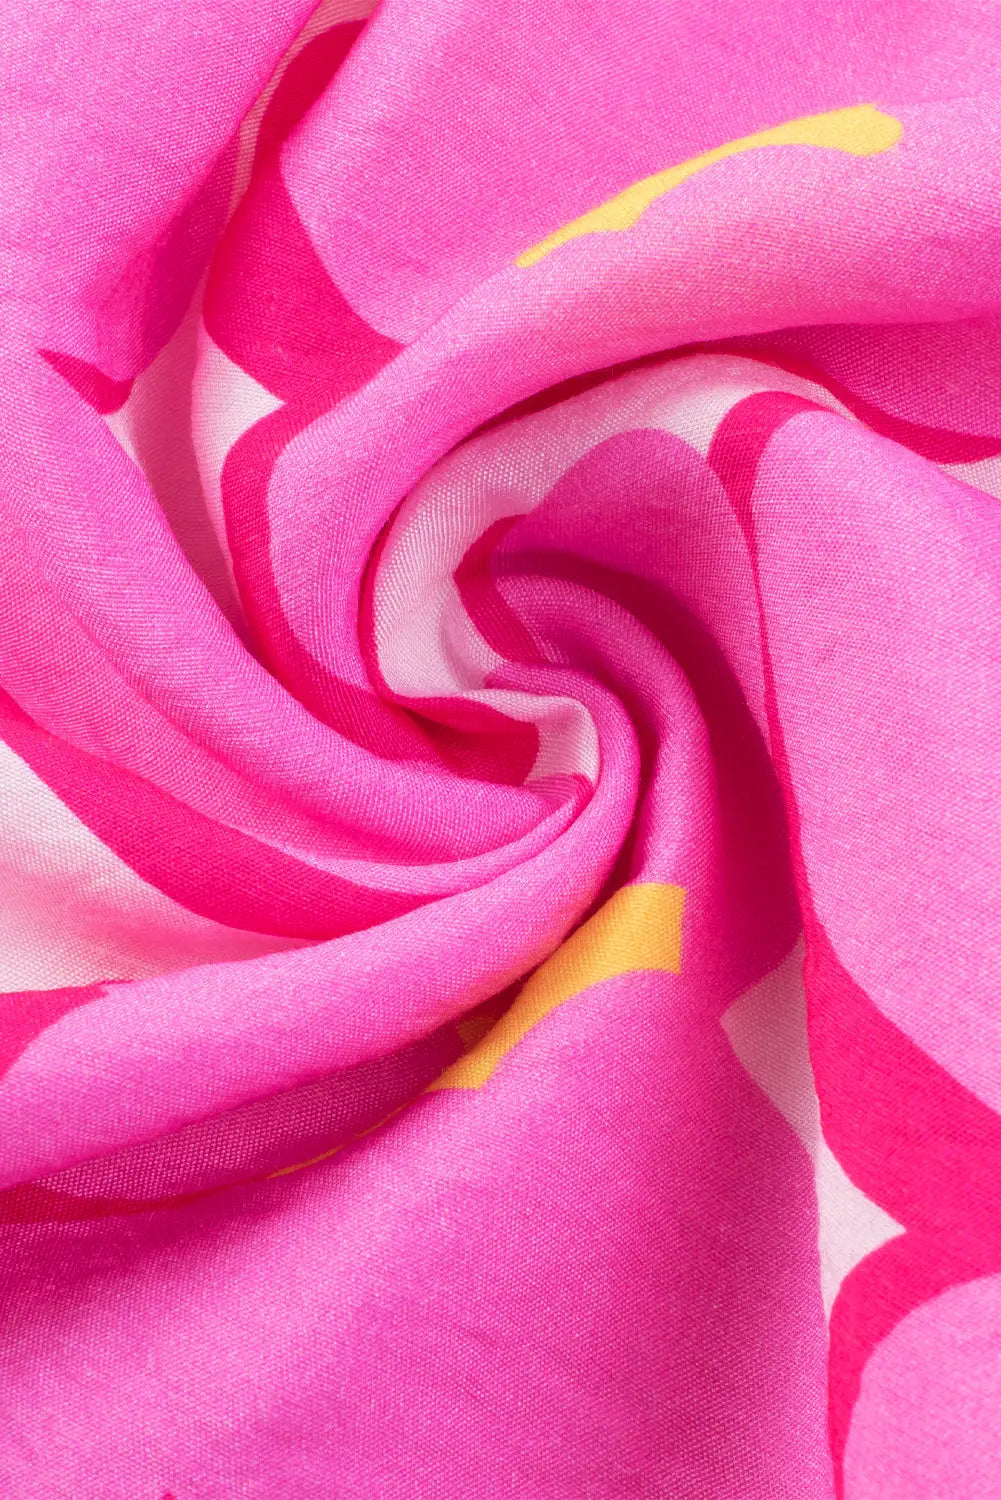 Rose floral print square neck empire waist flowy dress - dresses/floral dresses